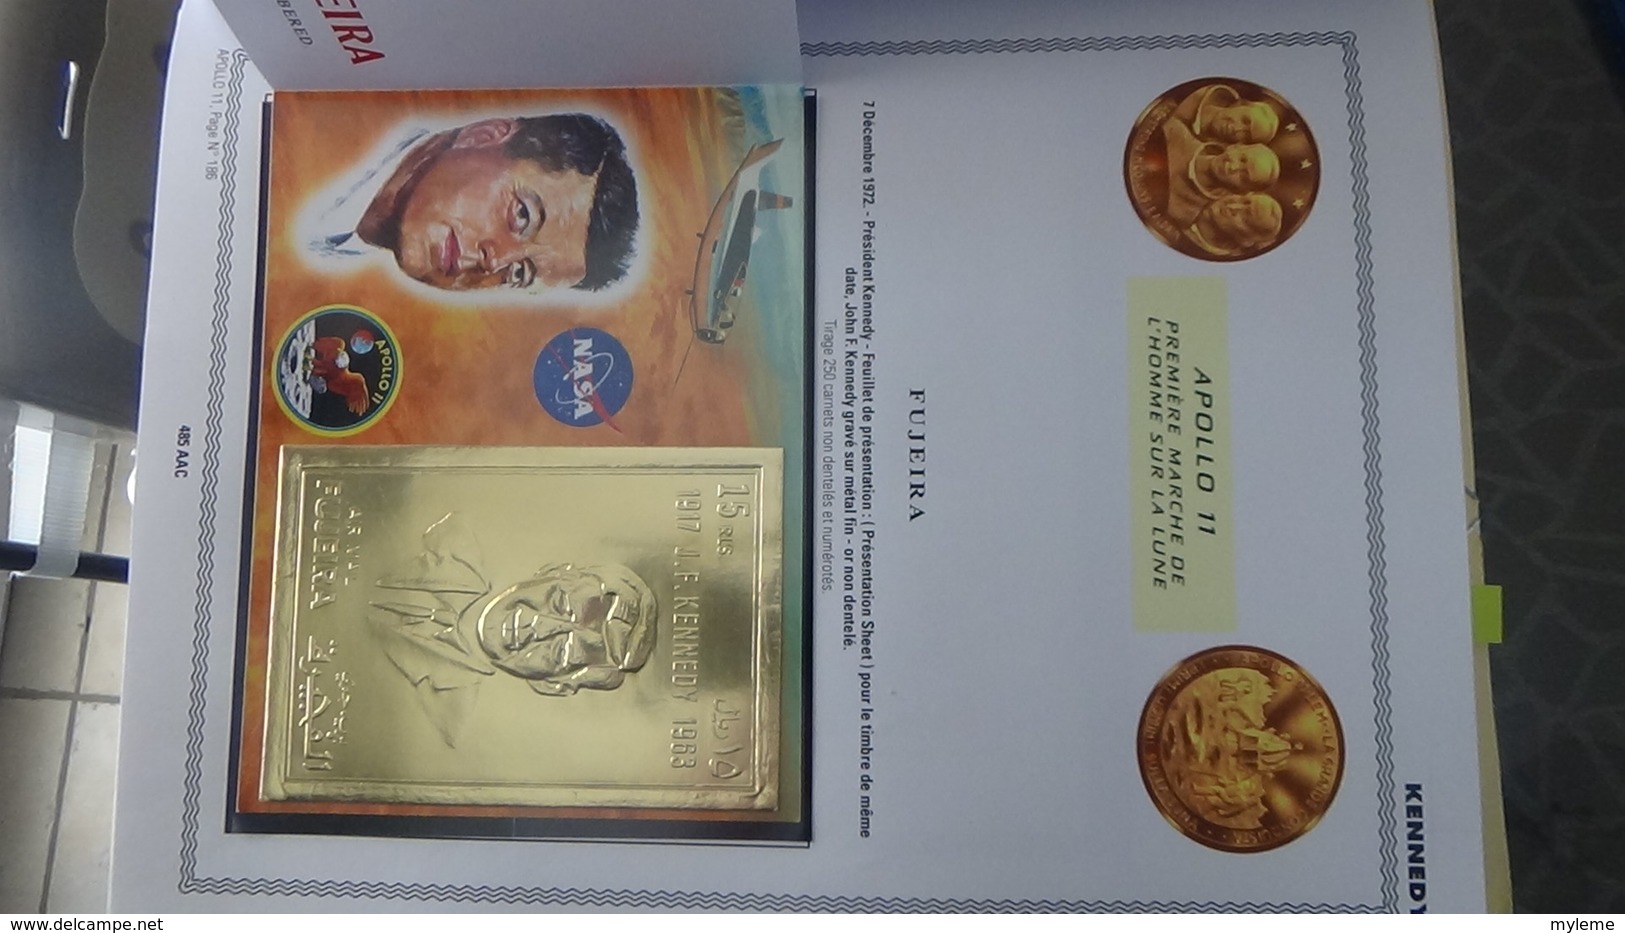 La conquête de l'epace en 9 volumes LOLLINI  timbres, blocs en or, argent, ND tous est **. Volume 4. Voir commentaires